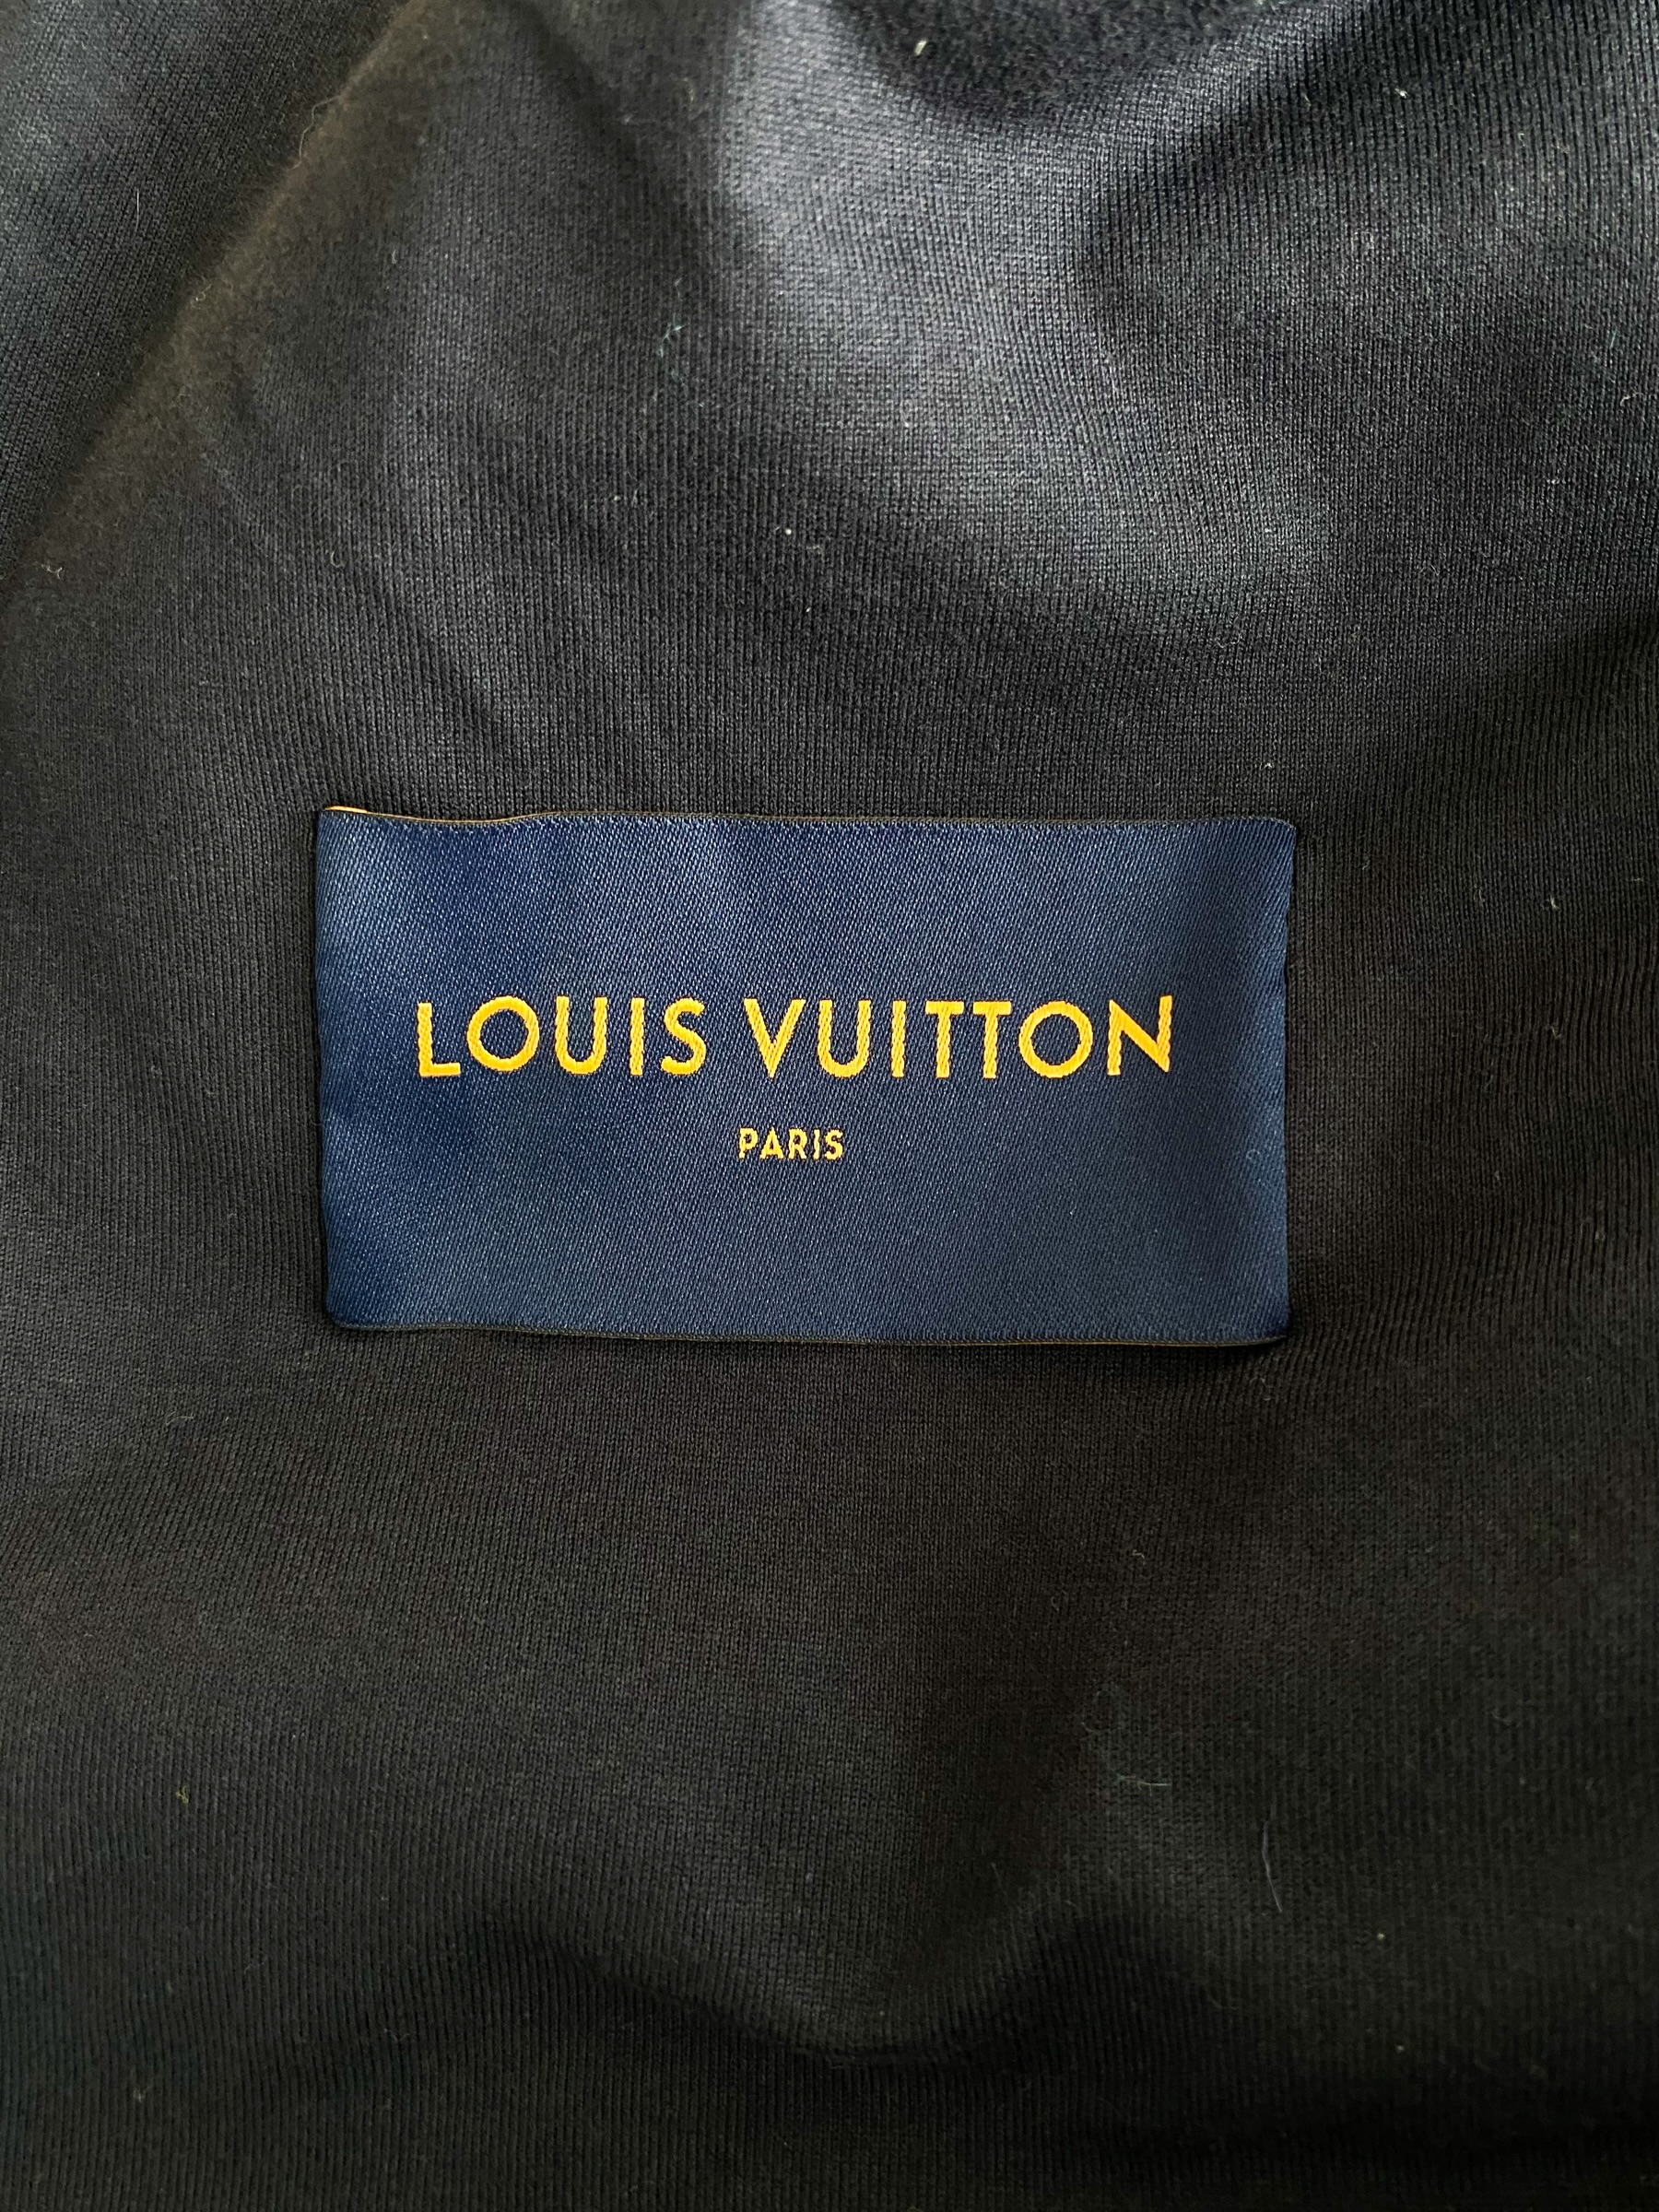 ORDER] Louis Vuitton Camo Monogram Fleece Zip Up Jacket